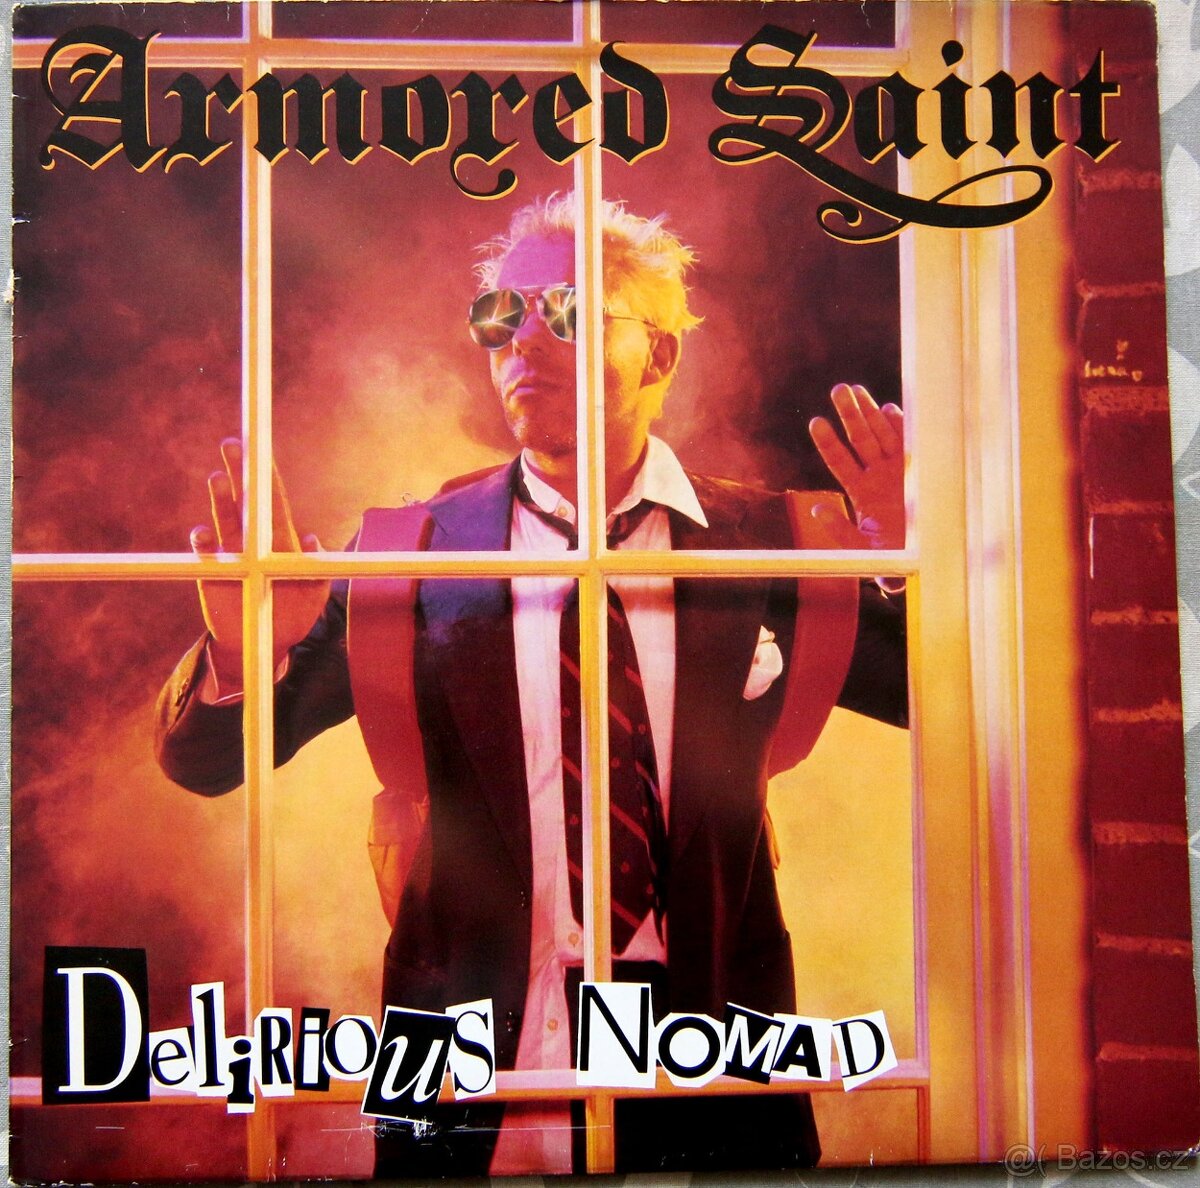 LP deska - Armored Saint - Delirious Nomad